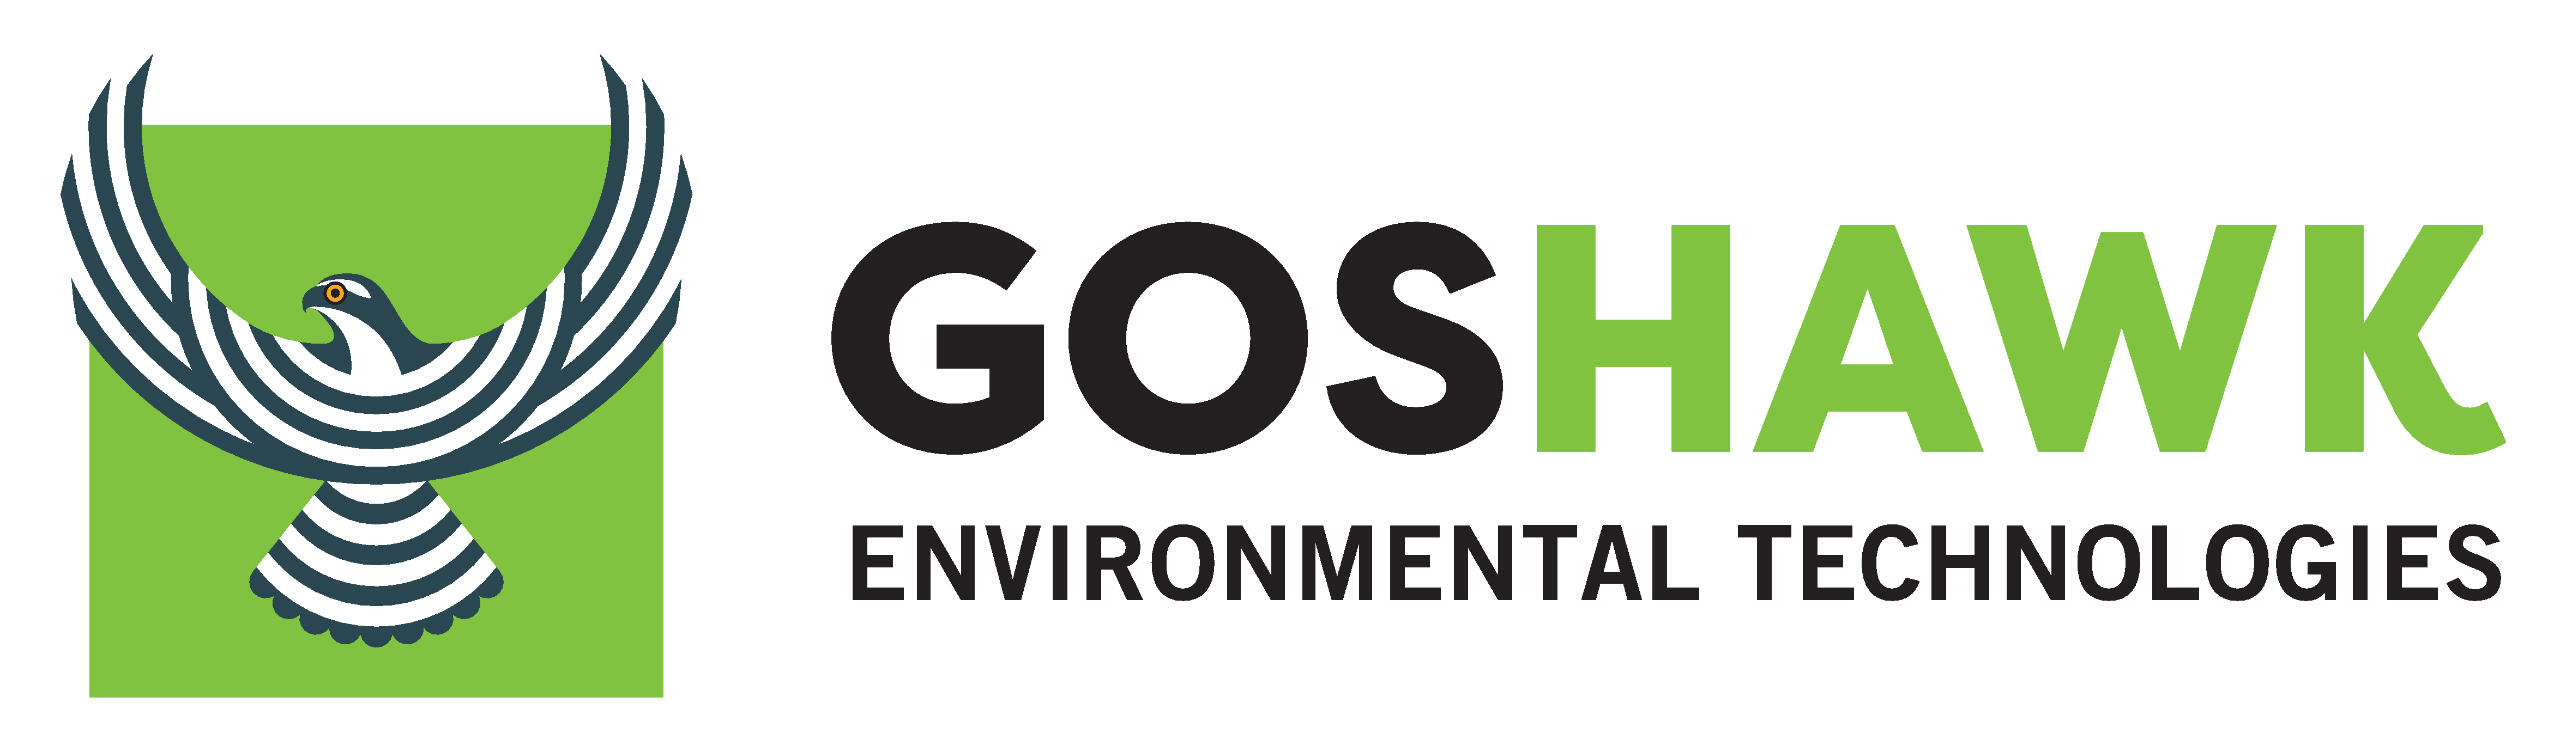 Goshawk Logo Image